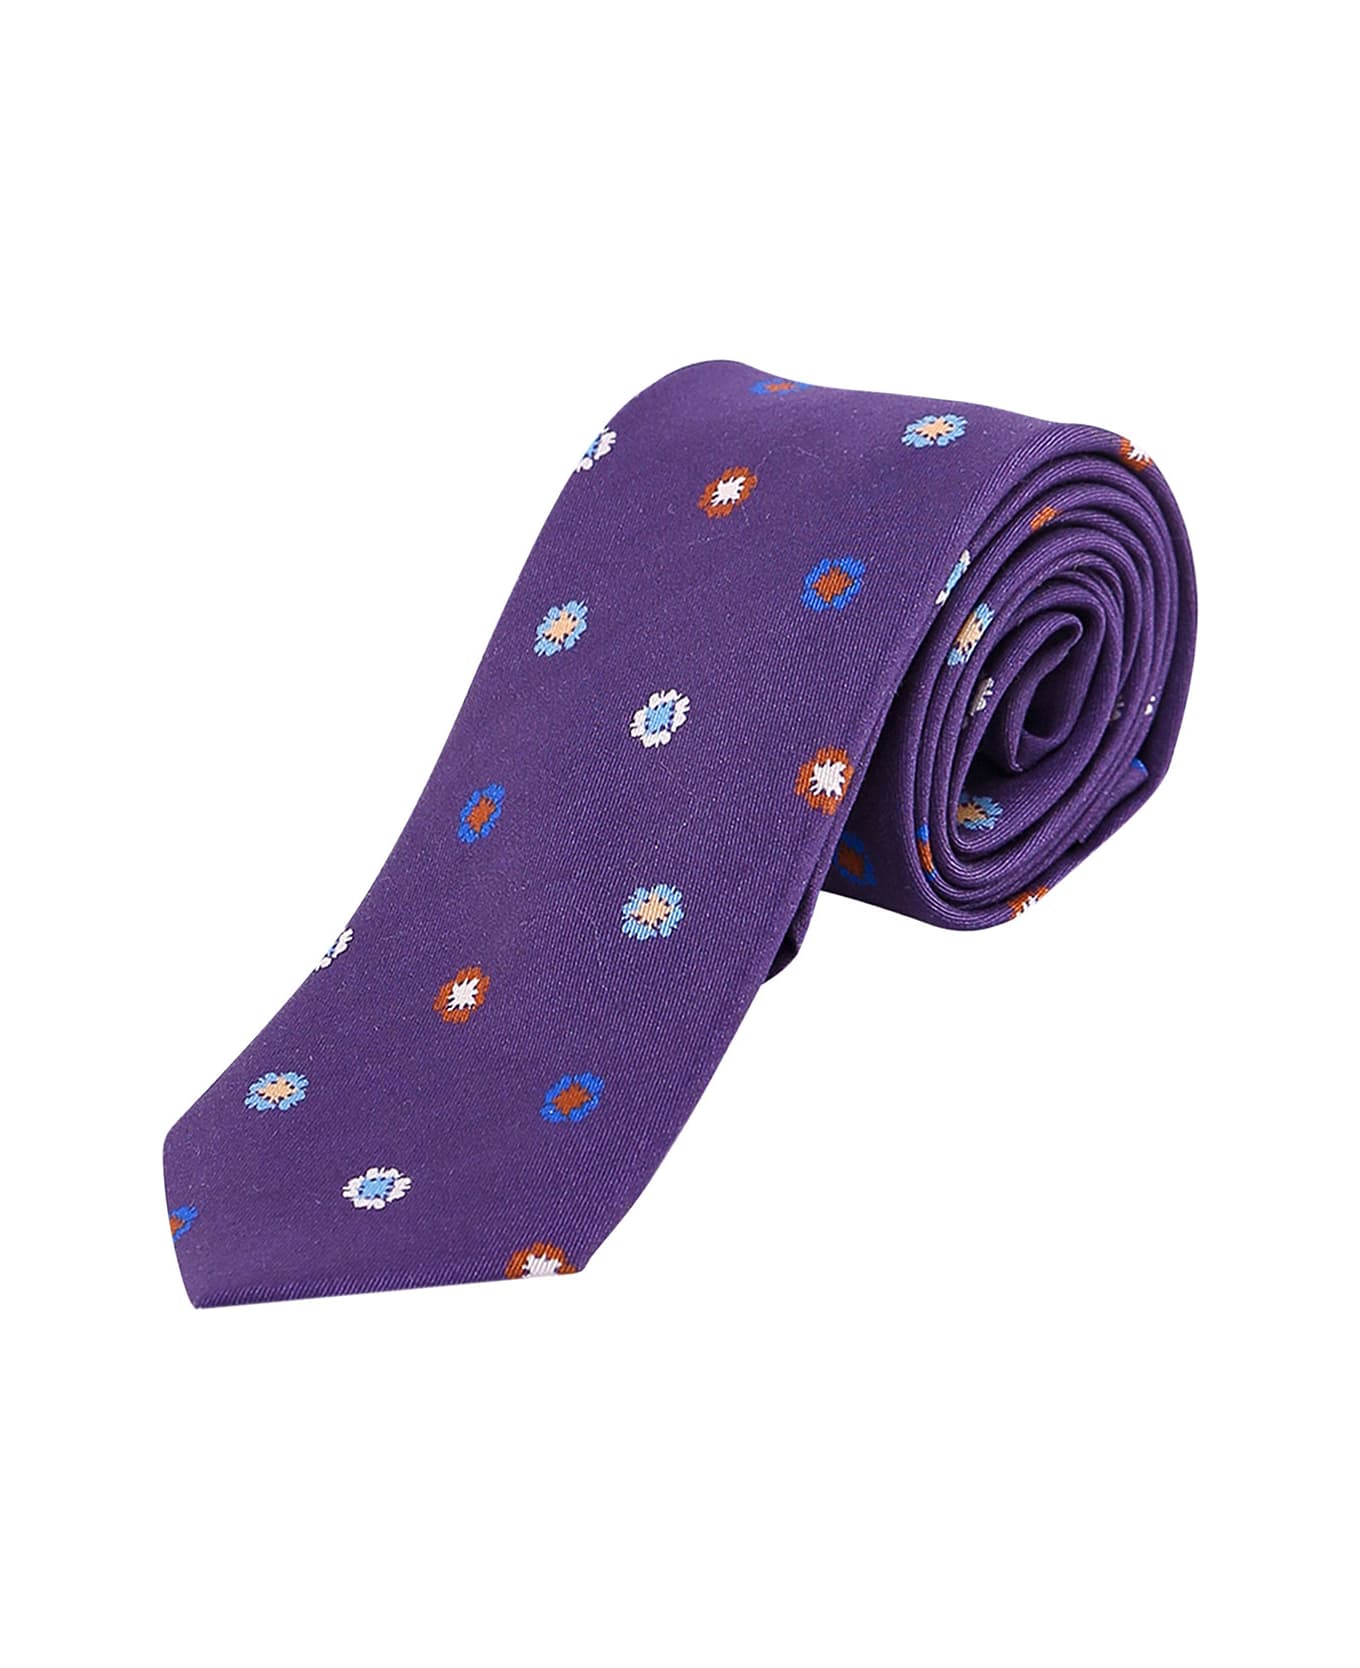 Nicky Tie - Purple ネクタイ